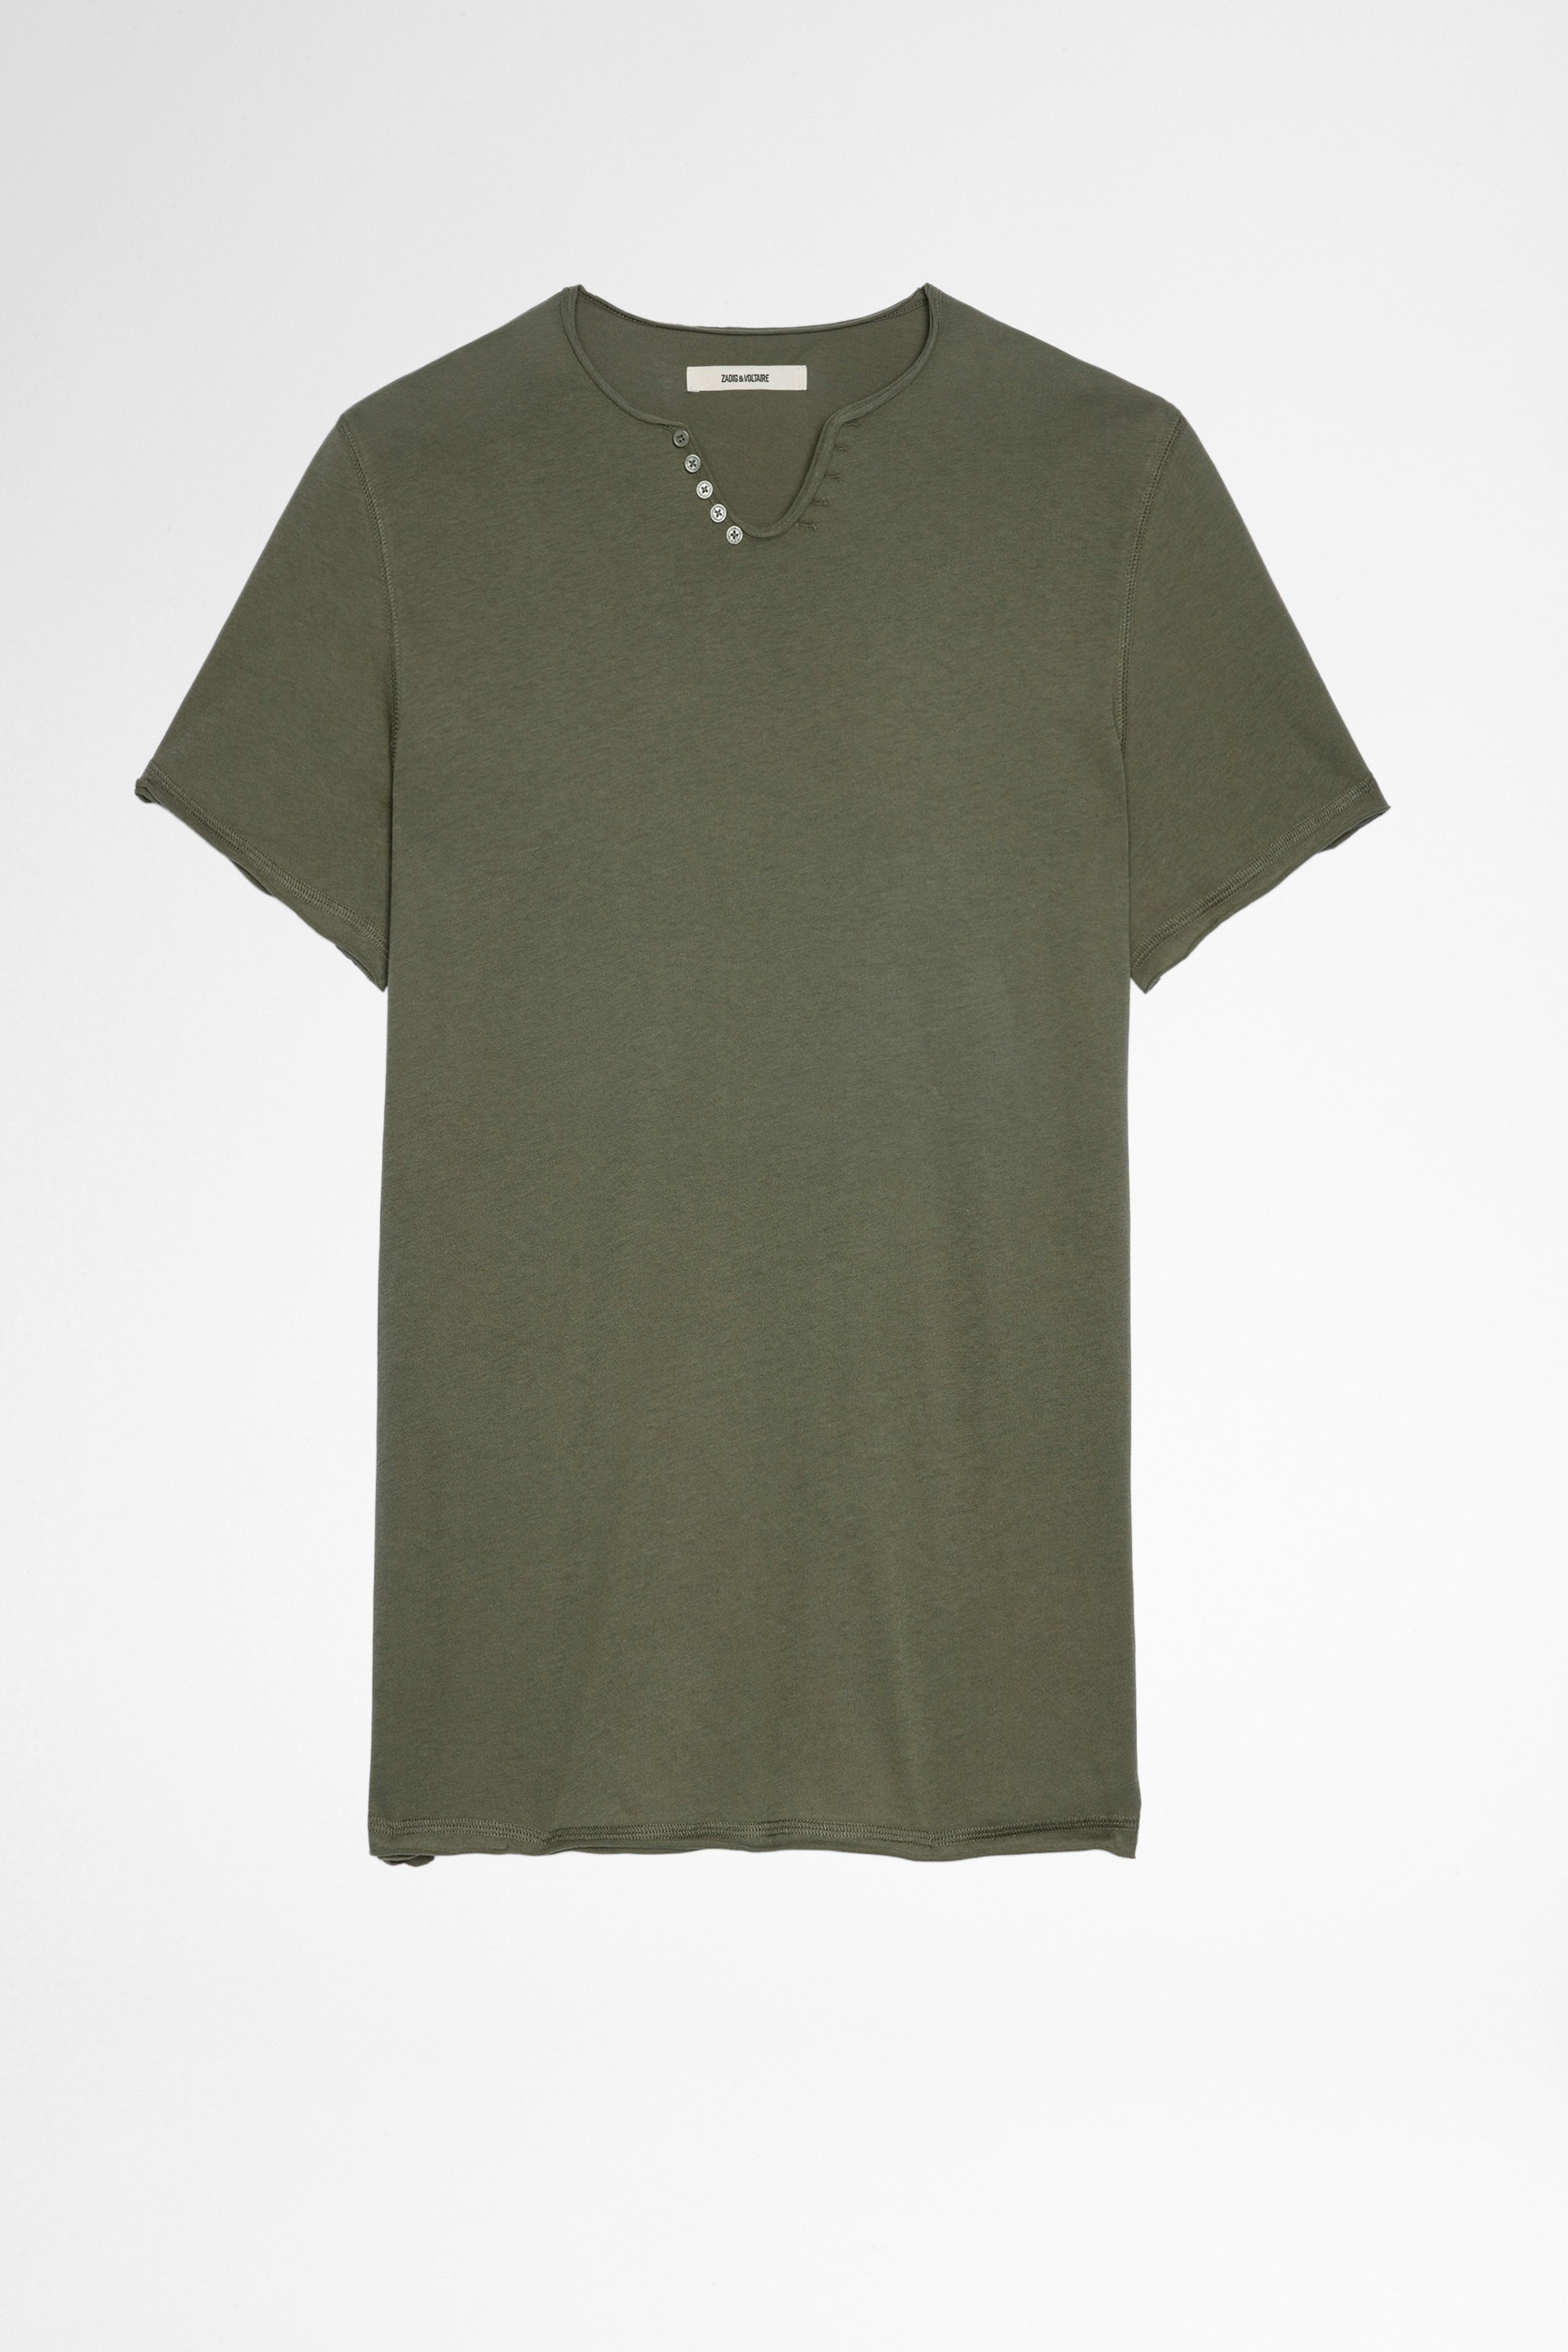 T-shirt Monastir T-shirt in cotone color kaki con collo a serafino, uomo. Questo prodotto é certificato GOTS e realizzato con fibre provenienti da agricoltura biologica